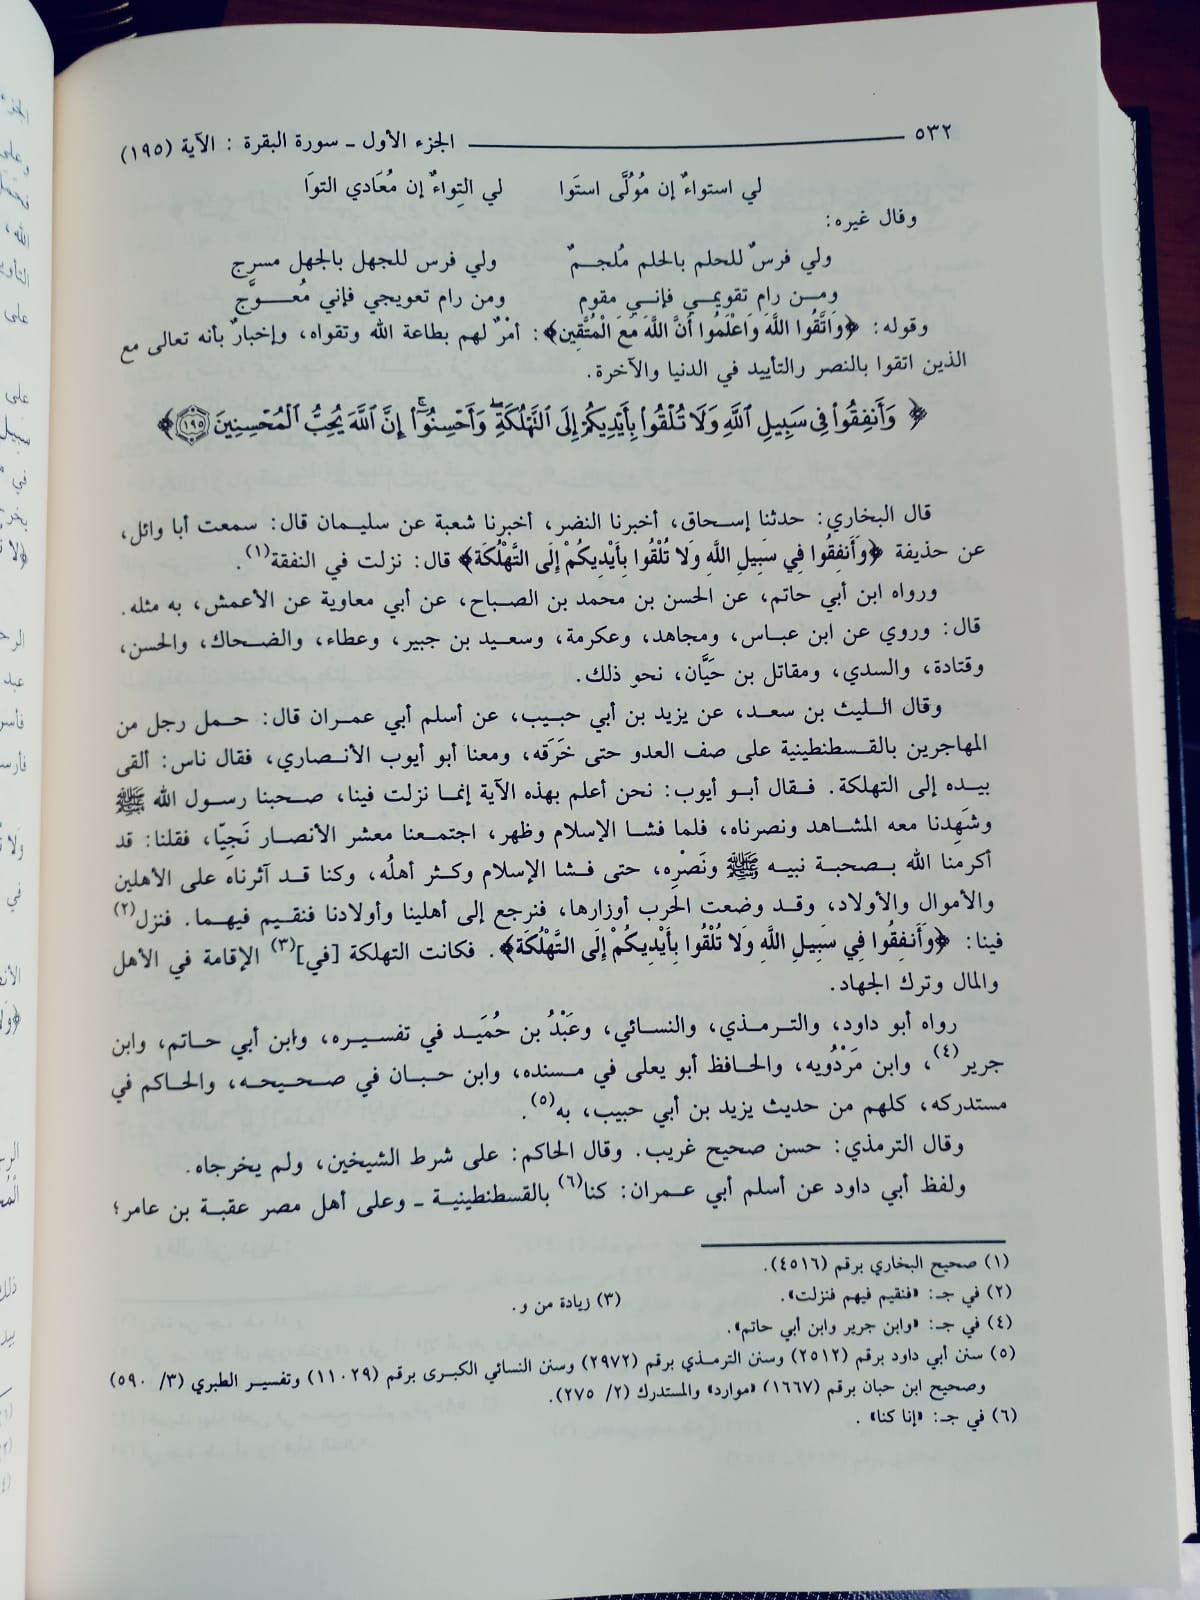 Tafsir Ibn Kathir (5Vol.)(Tayba)تفسير ابن كثير - تحقيق سامي السلامة